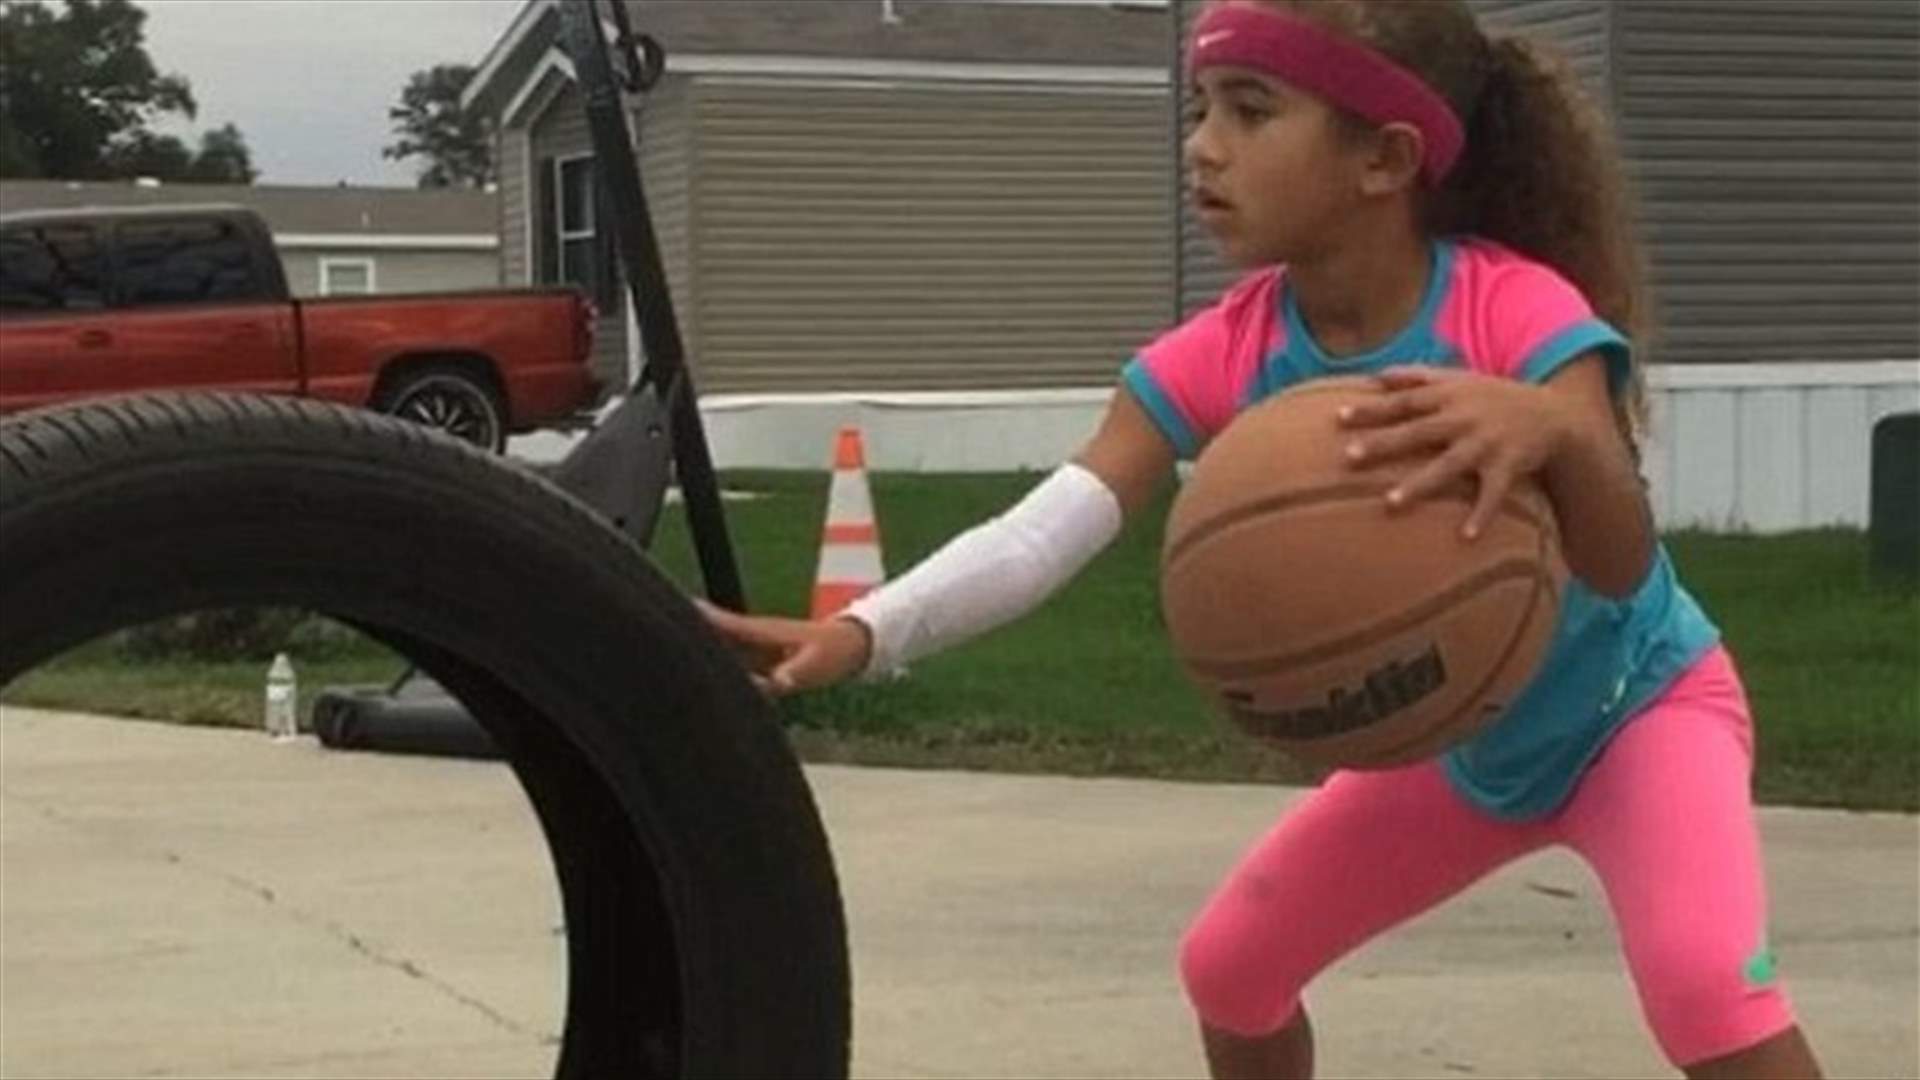 بالفيديو: طفلة في السادسة تُنافس أبرز لاعبي كرة السلة